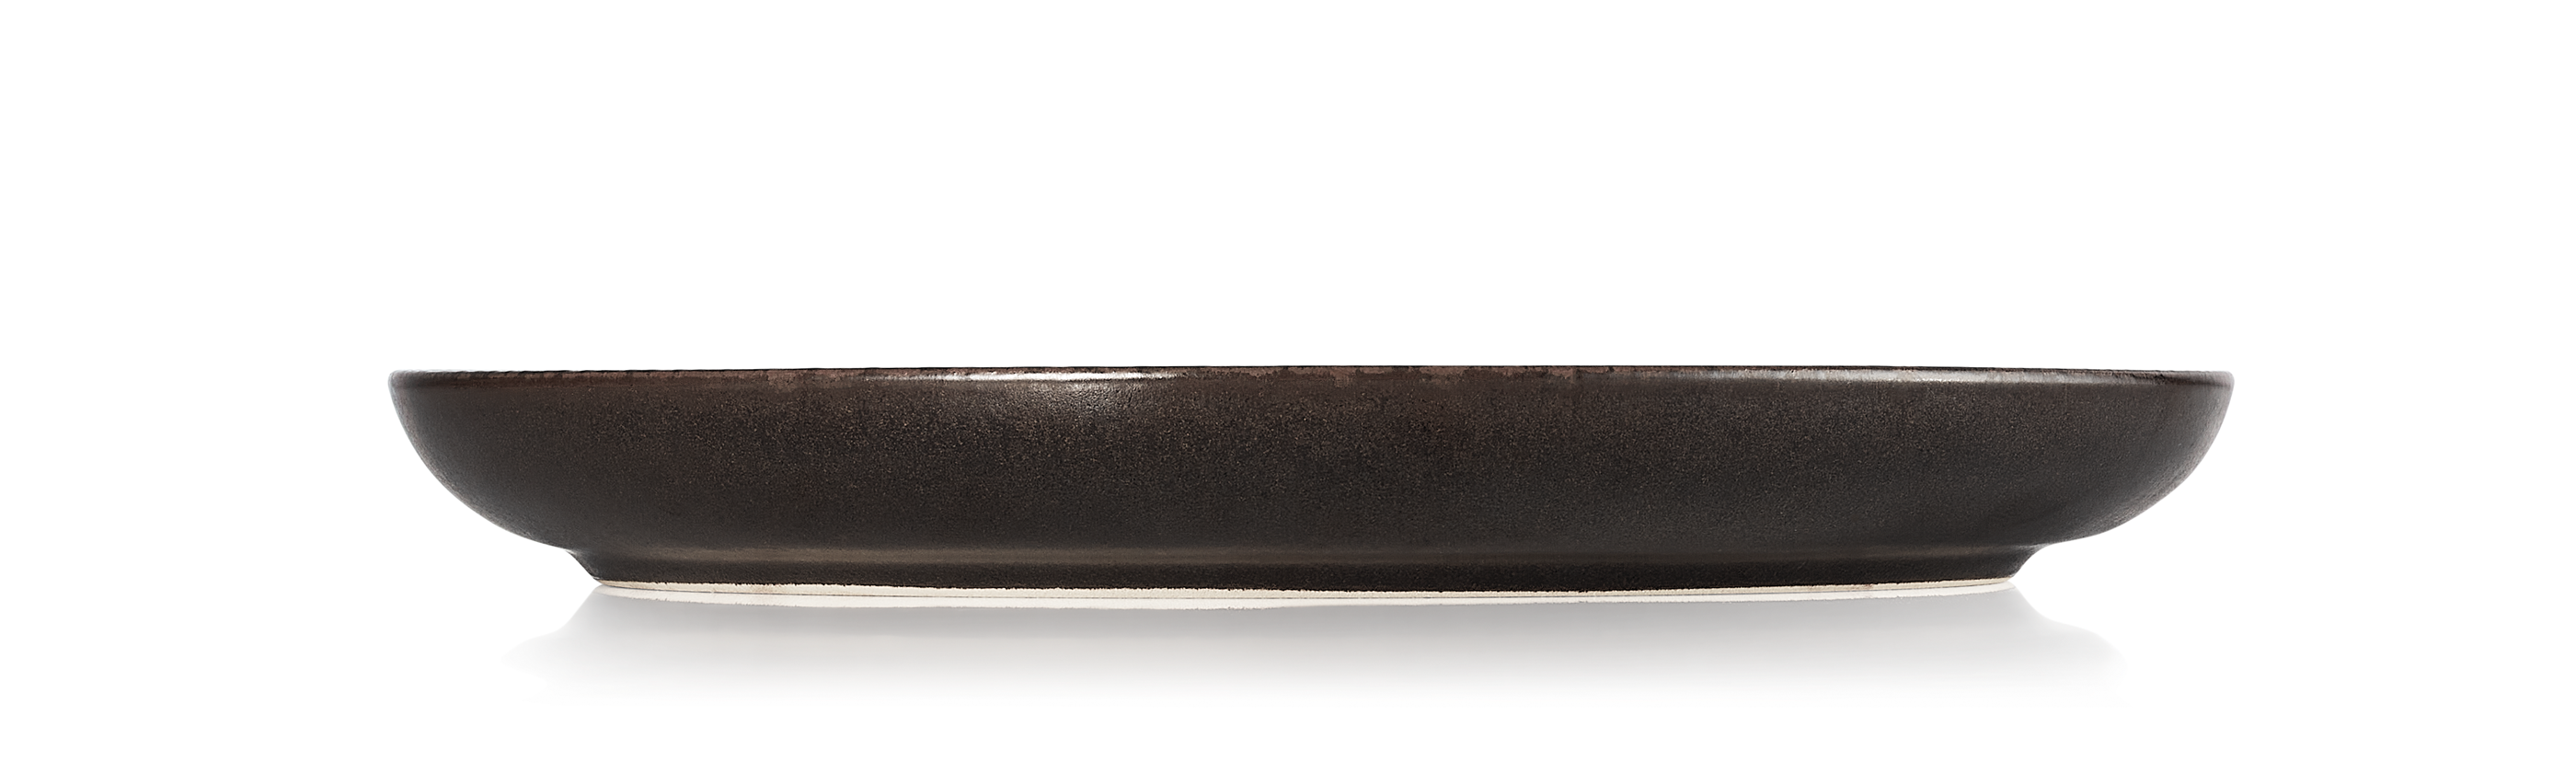 ROCKZZERO® Teller, flach, Ø 28 cm, Set á 6 Stück, metallic brown, Steinzeug